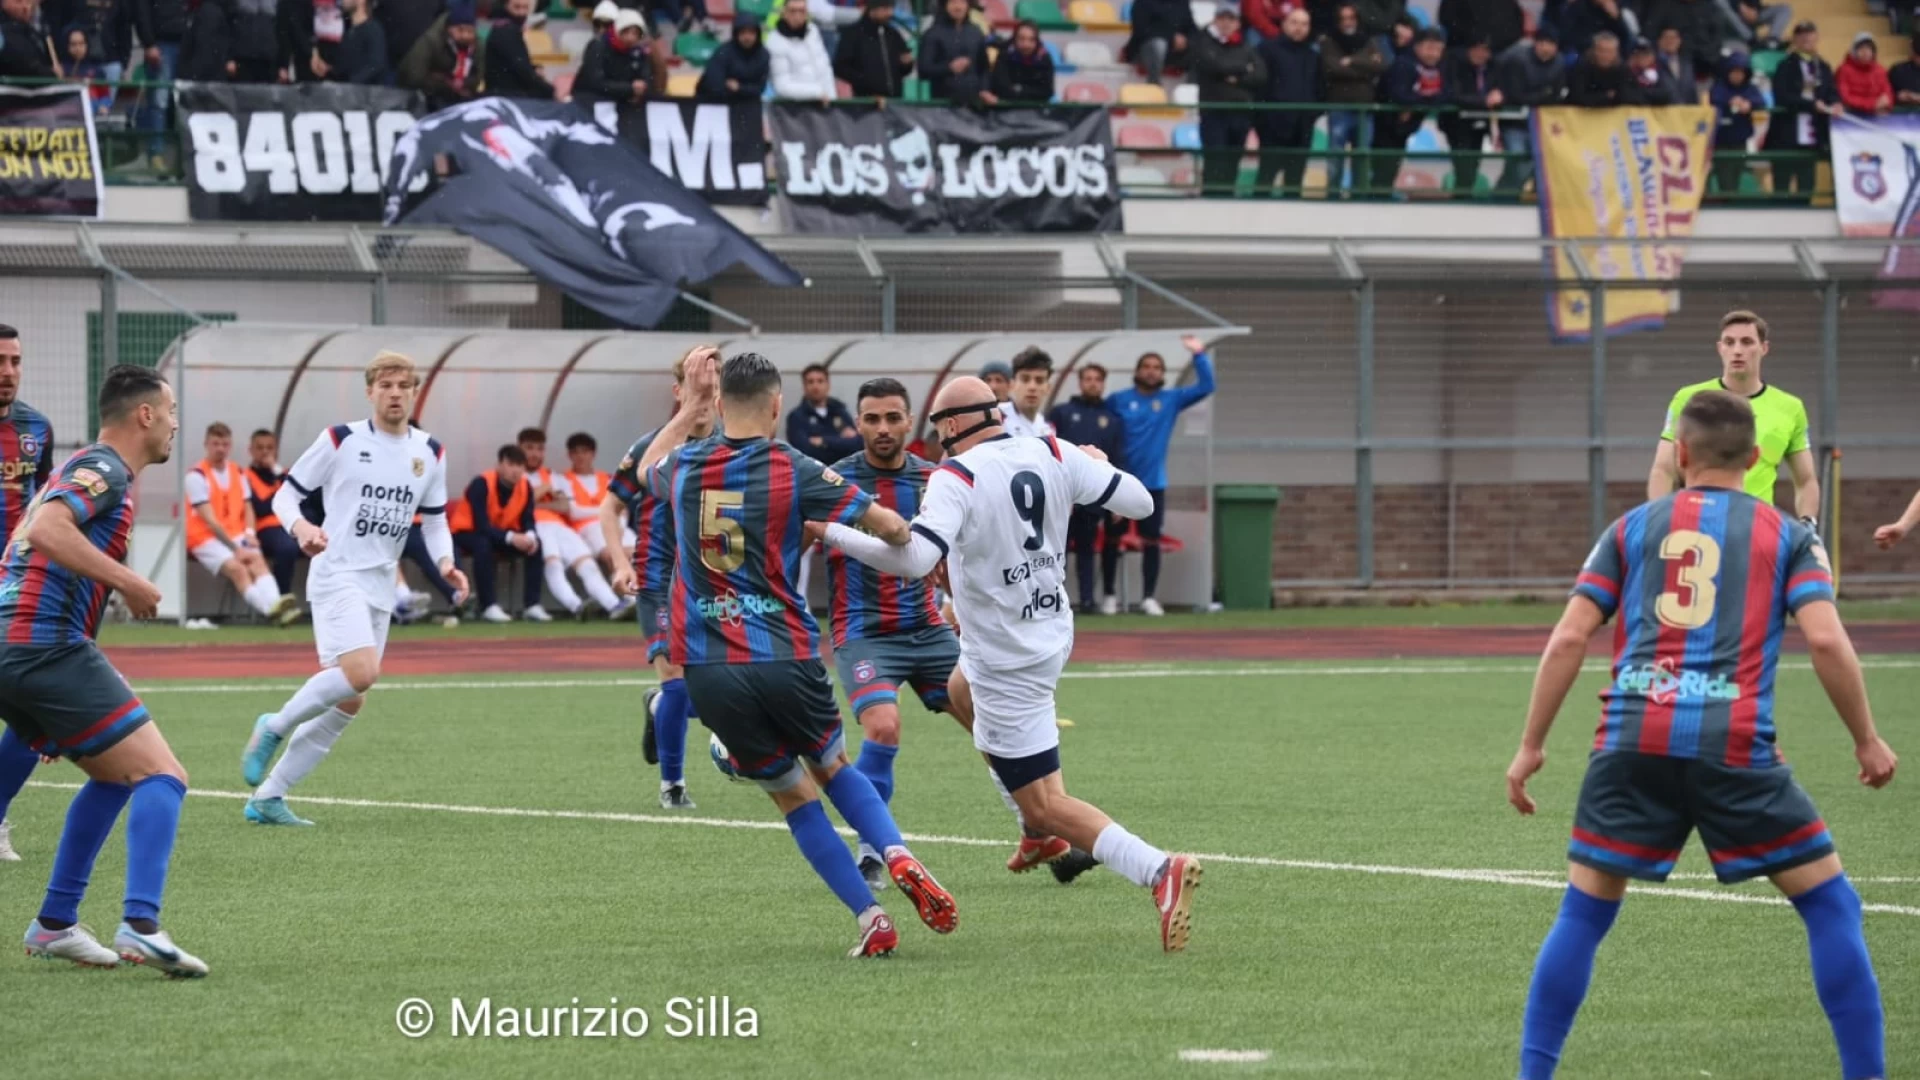 Coppa Italia Nazionale: il Campobasso sconfitto nella prima semifinale contro il San Marzano. A Sarno finisce 1-0 per i campani.